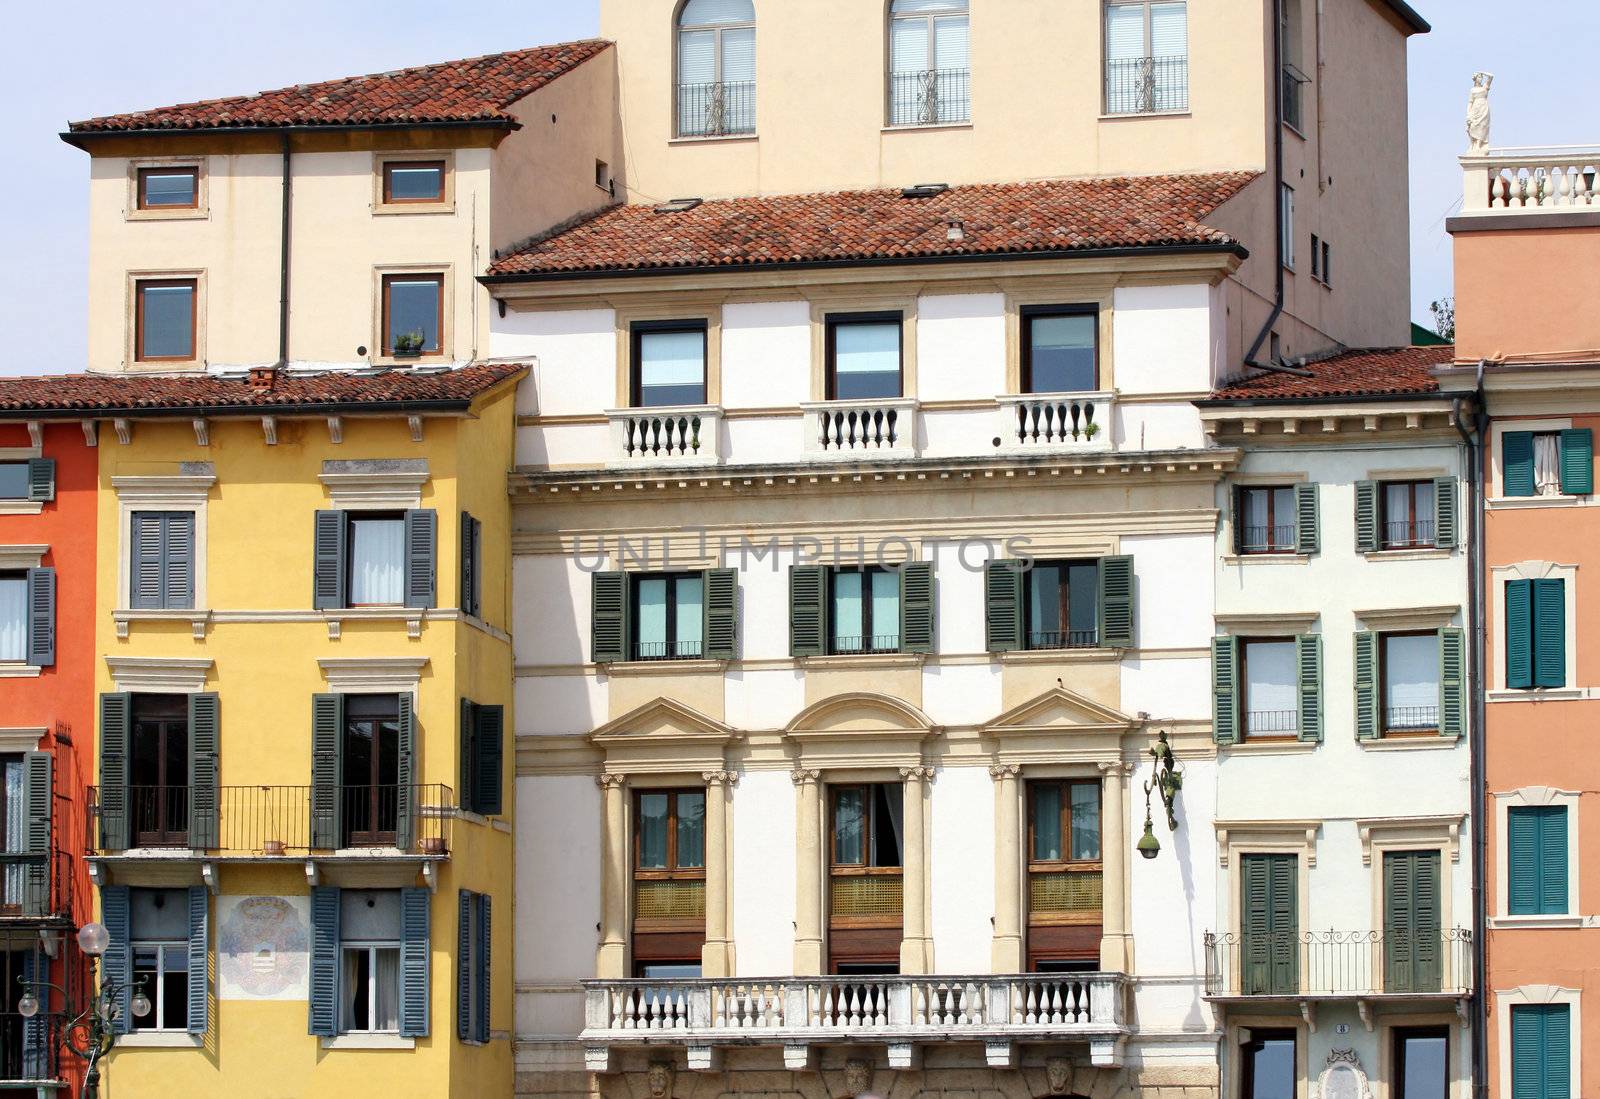 details facade in Verona, Italy